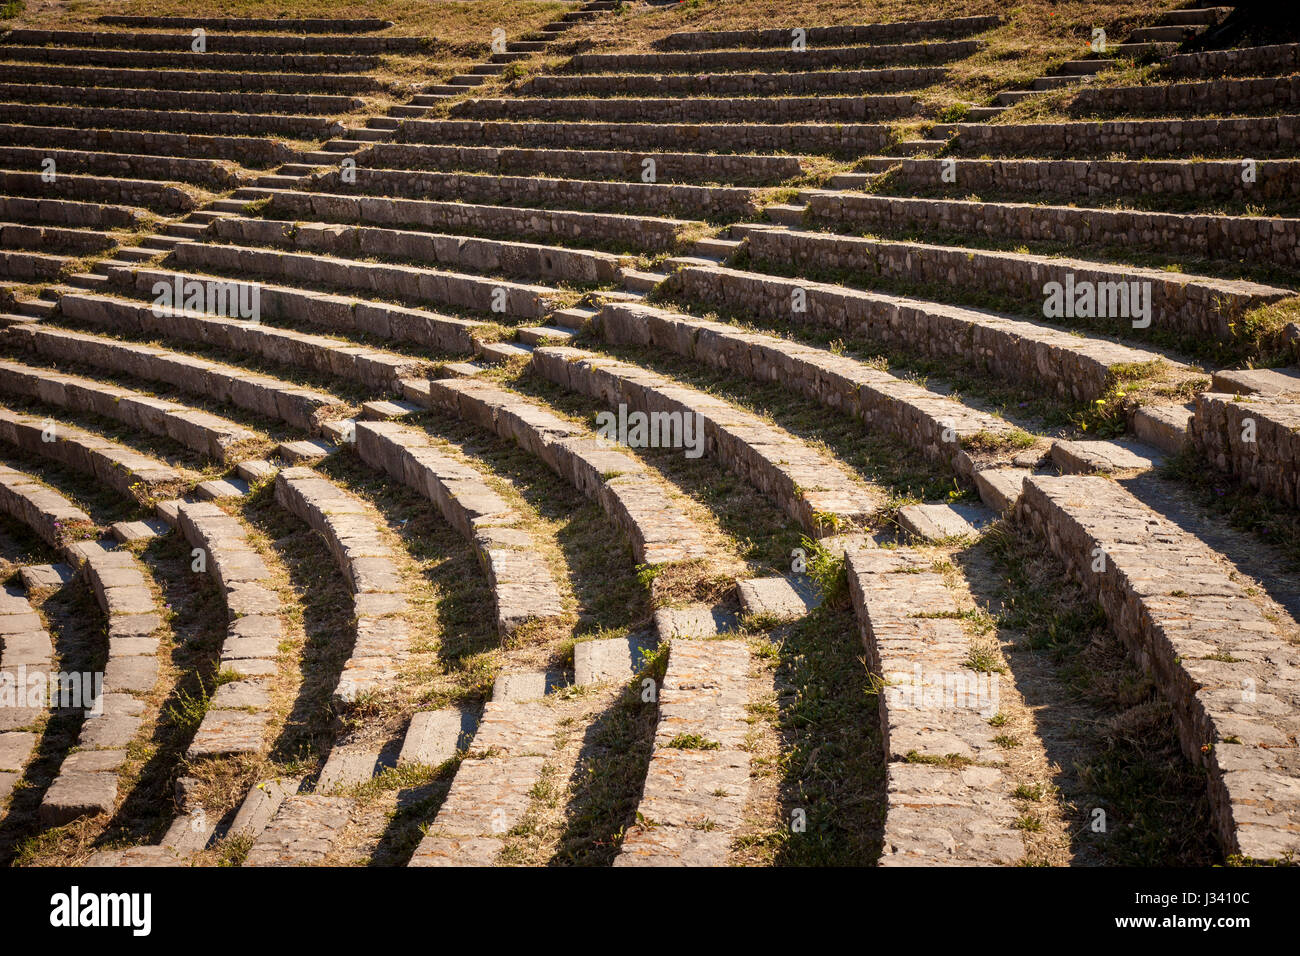 Filas de asientos en el Teatro Greco (teatro griego - 3c. BC), Taormina, Sicilia, Italia Foto de stock